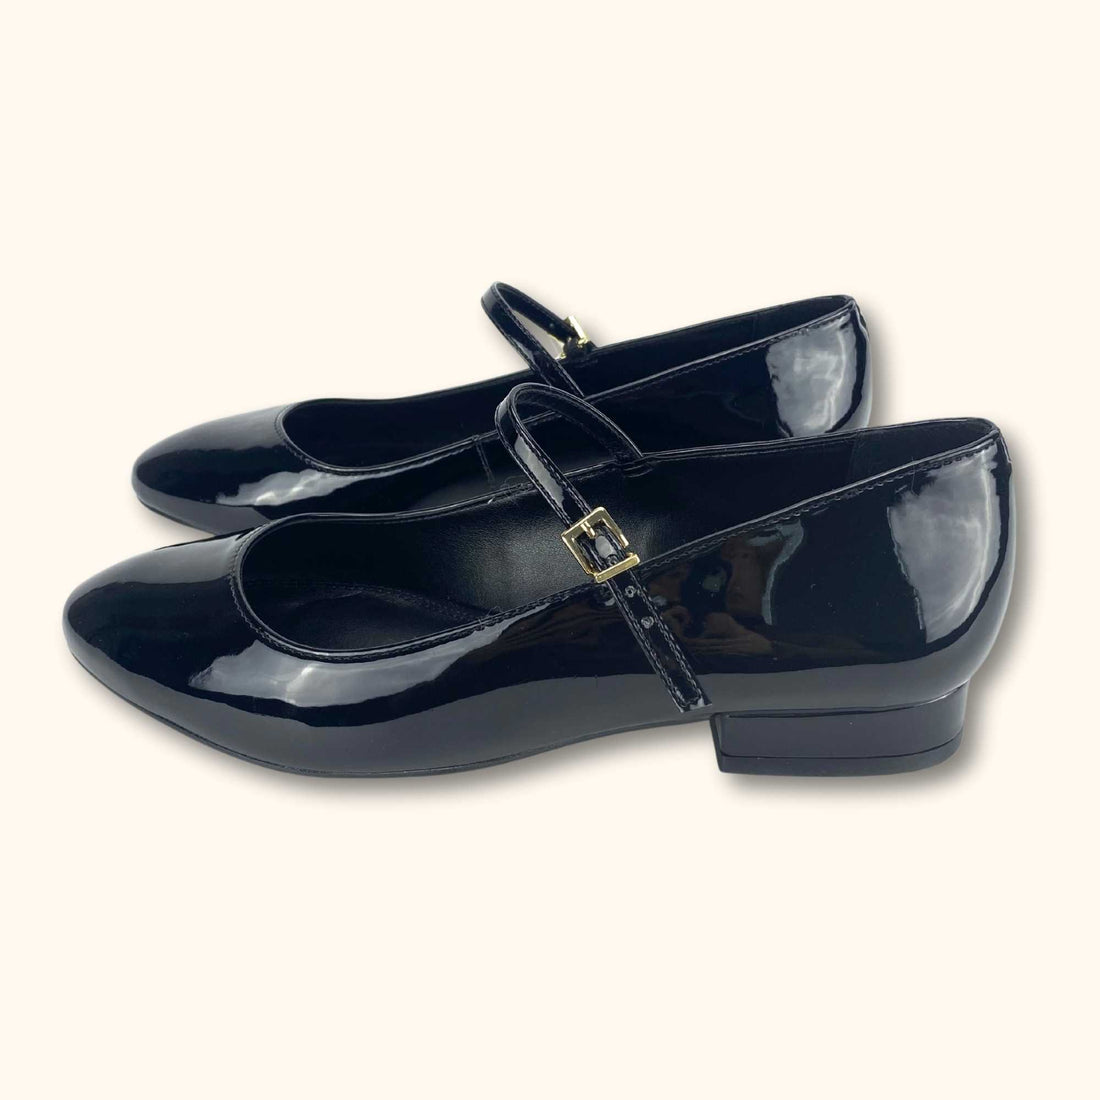 Dune London Flat Black Ballet Shoes - Size 3 - Dune - Flats